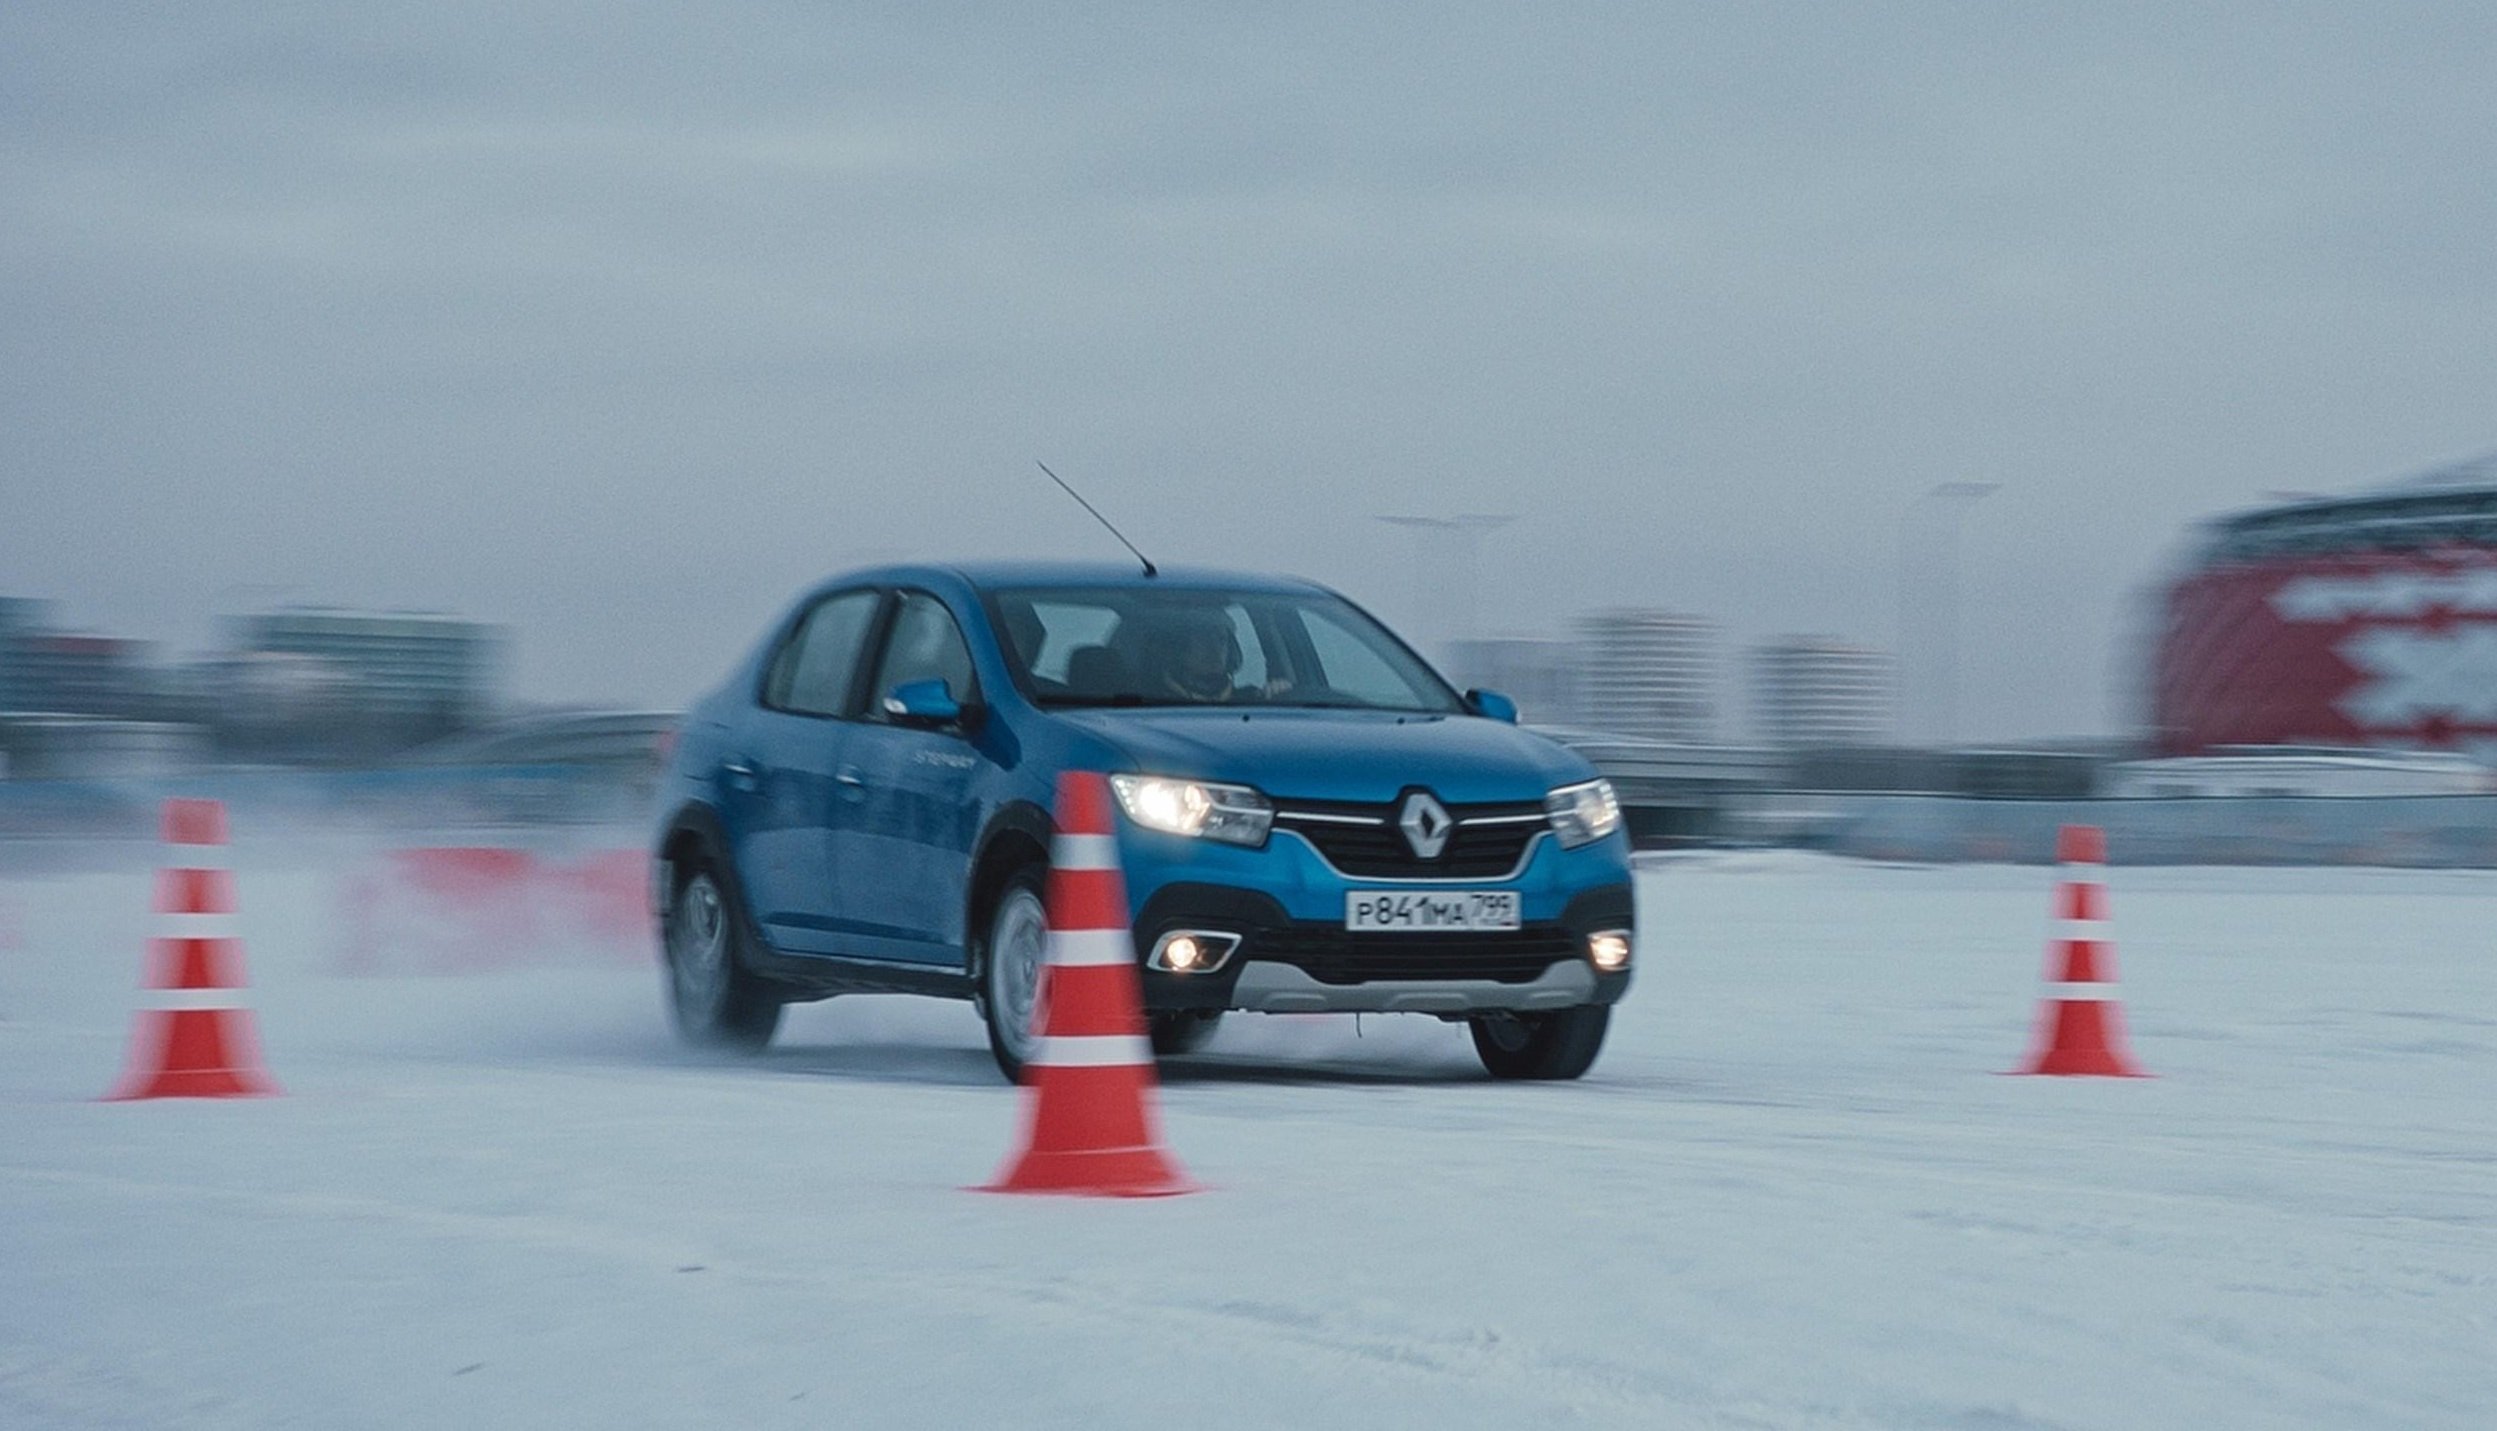 Renault Россия запускает проект по адаптации водителей после ДТП